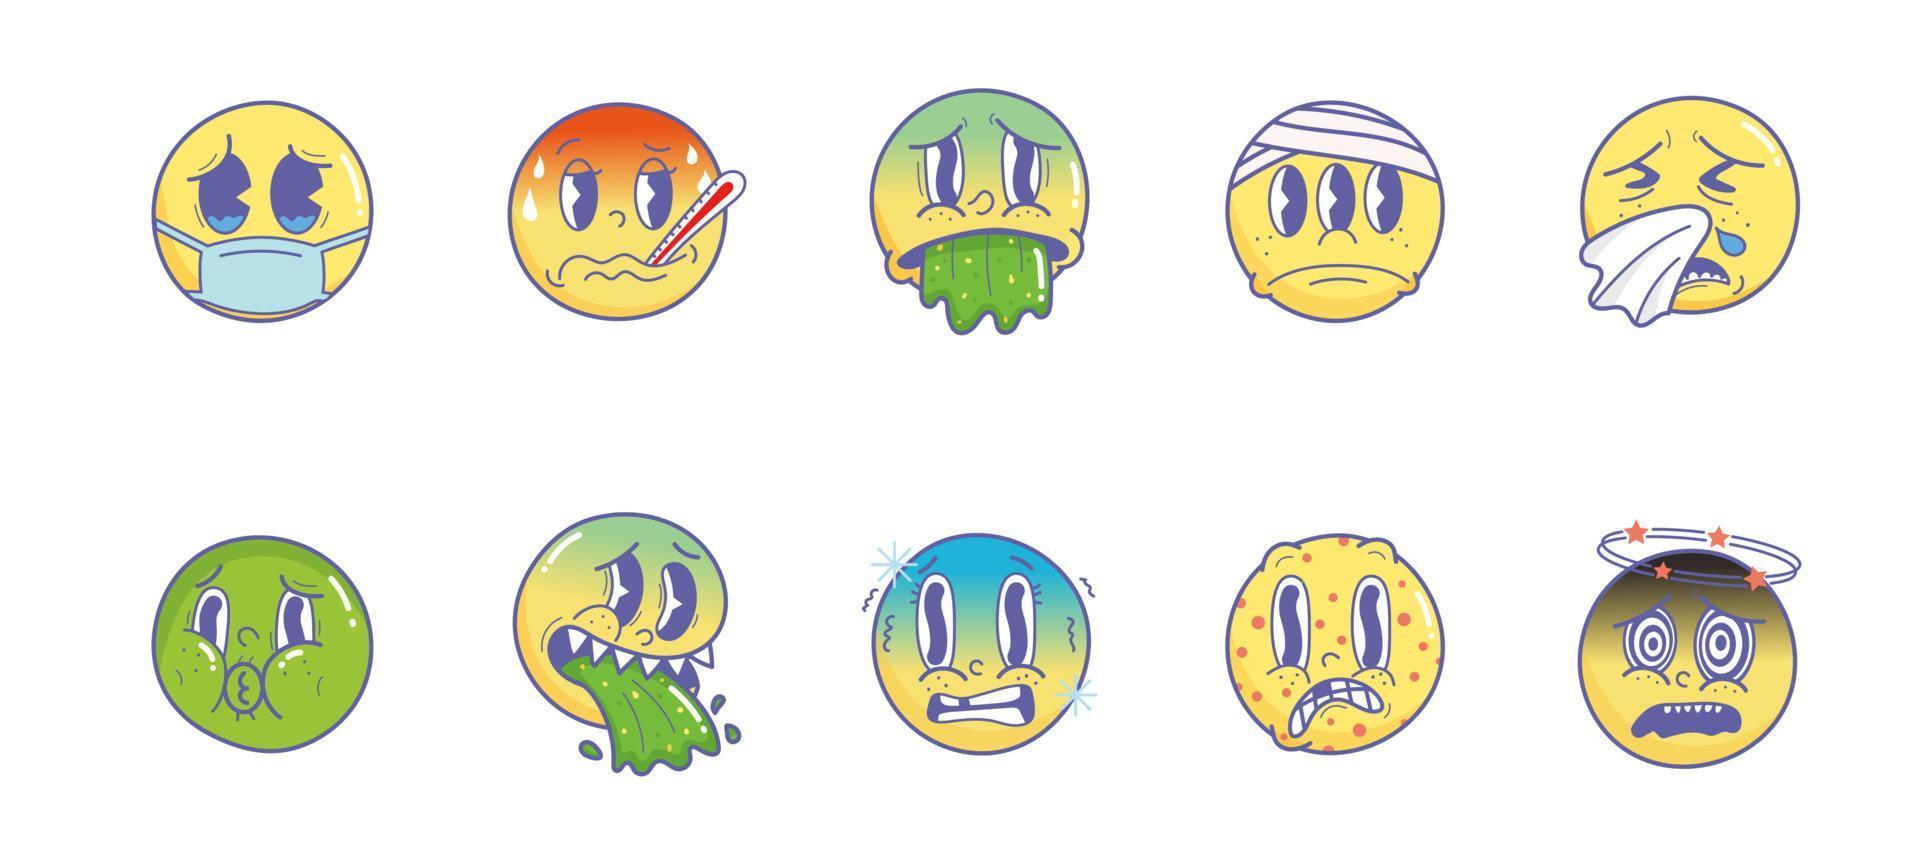 krankes Emoji. Vintage 30er 40er 50er Cartoon und Comic Gesichtsausdrücke Emoji. ausdrucksstarke augen und mund, krankes niesen fieber erbrechen schüttelt charakter gesichtsausdrücke vektor set premium vektor